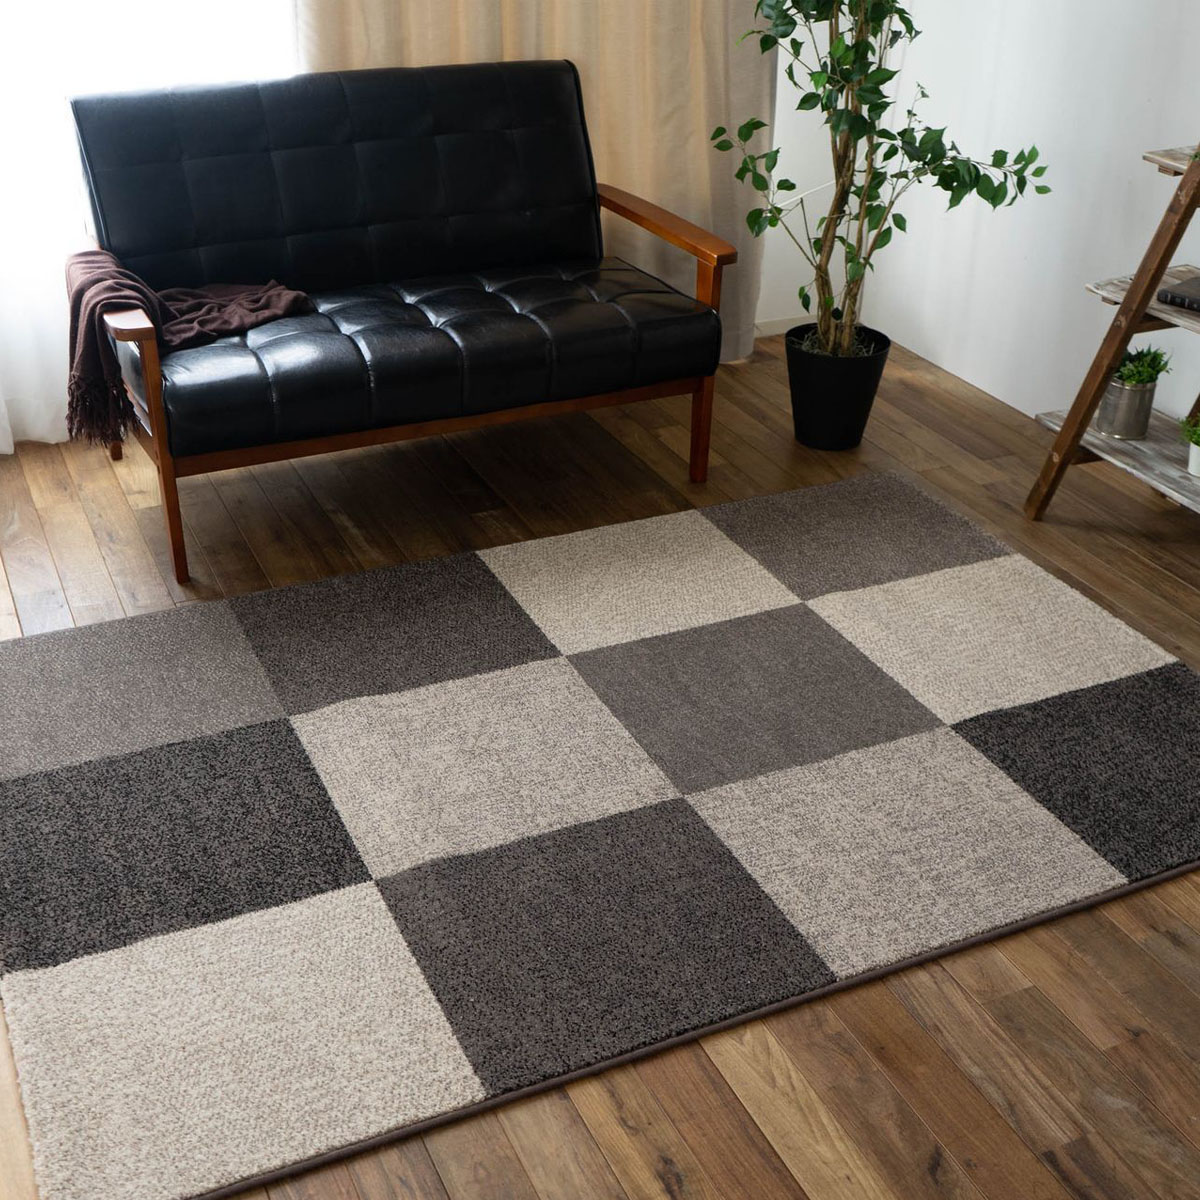 おしゃれ ラグ マルチカラー ベルギー絨毯 200×250cm 3畳 大 ウィルトン織り カーペット 送料無料 シンプル